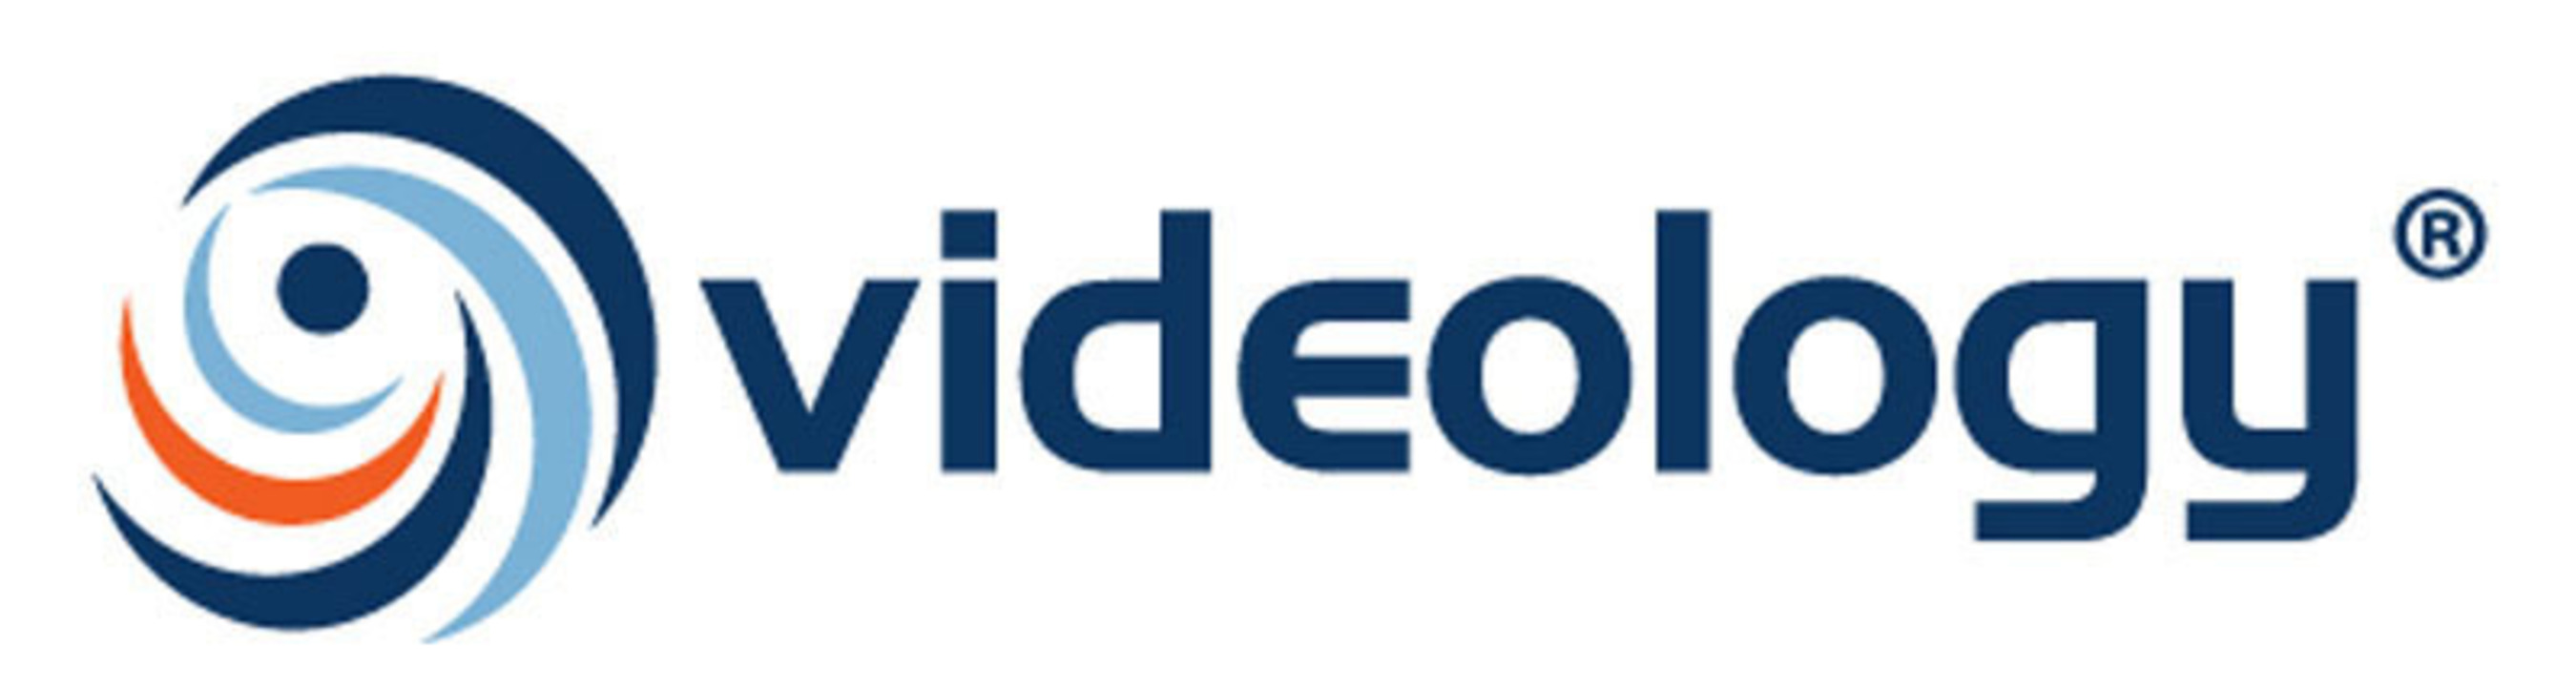 Videology logo. (PRNewsFoto/Videology) (PRNewsFoto/)